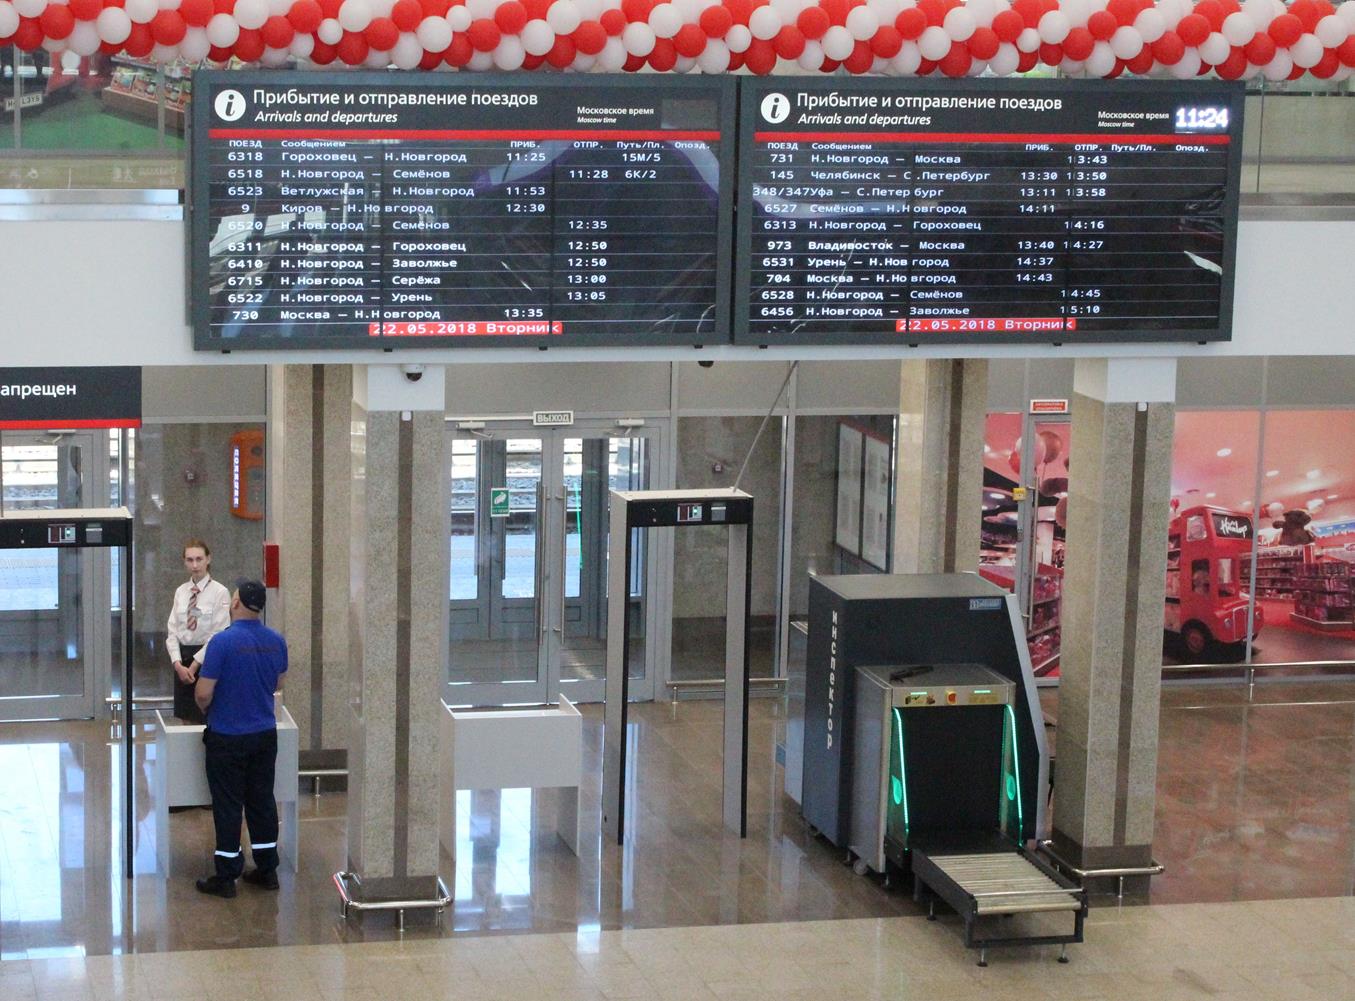 Московский вокзал нижнего новгорода: адрес, телефоны и услуги - на поезде